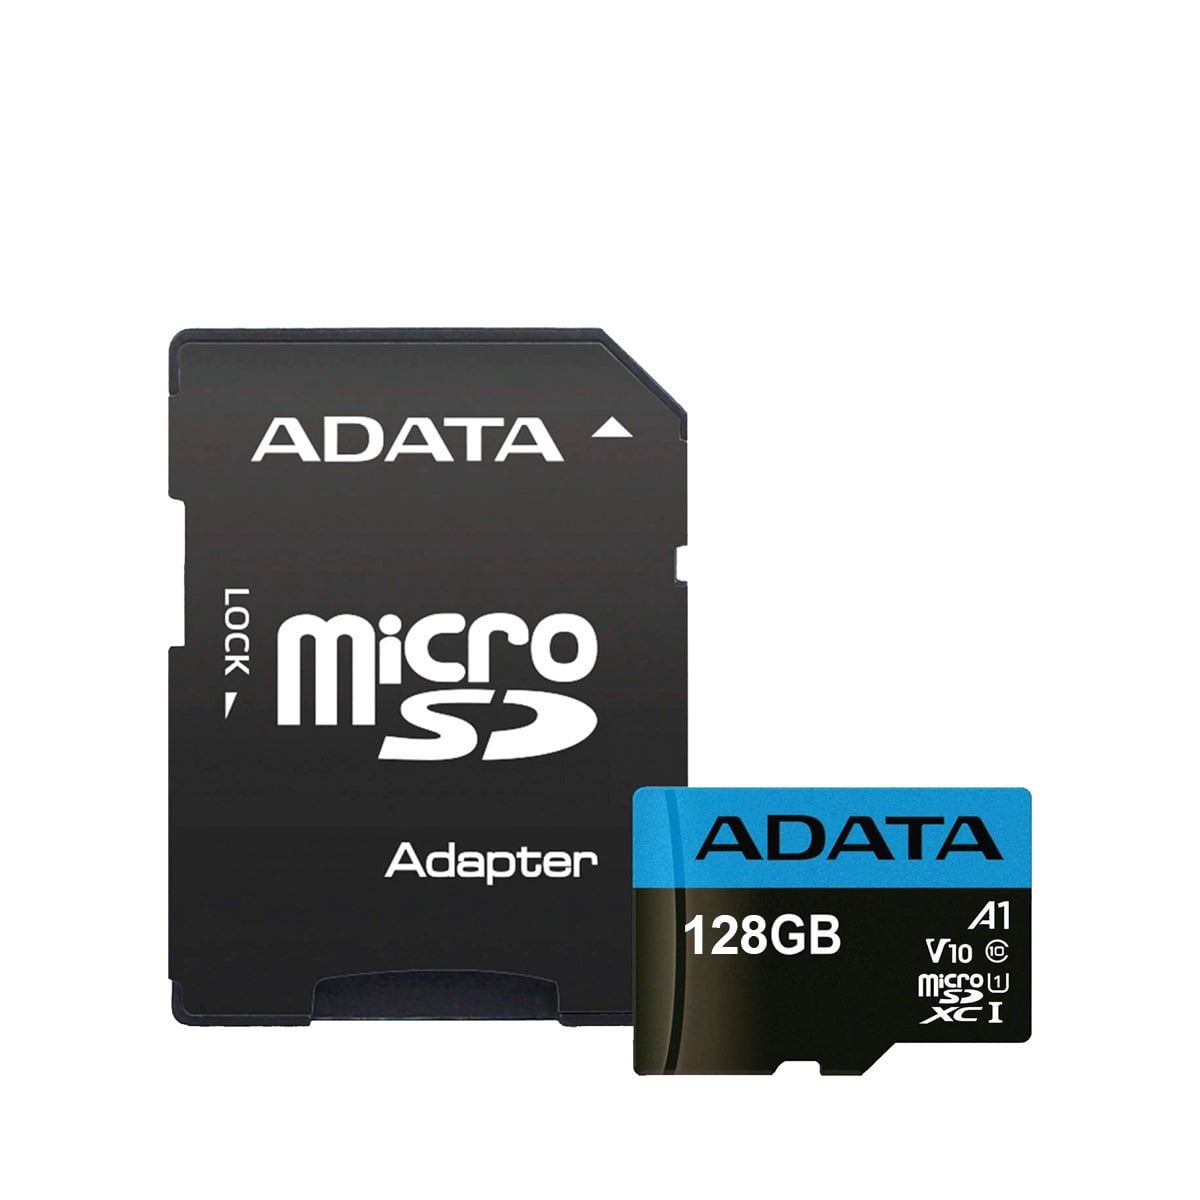 کارت حافظه microSDHC ای دیتا مدل Premier V10 A1 ظرفیت 128 گیگابایت